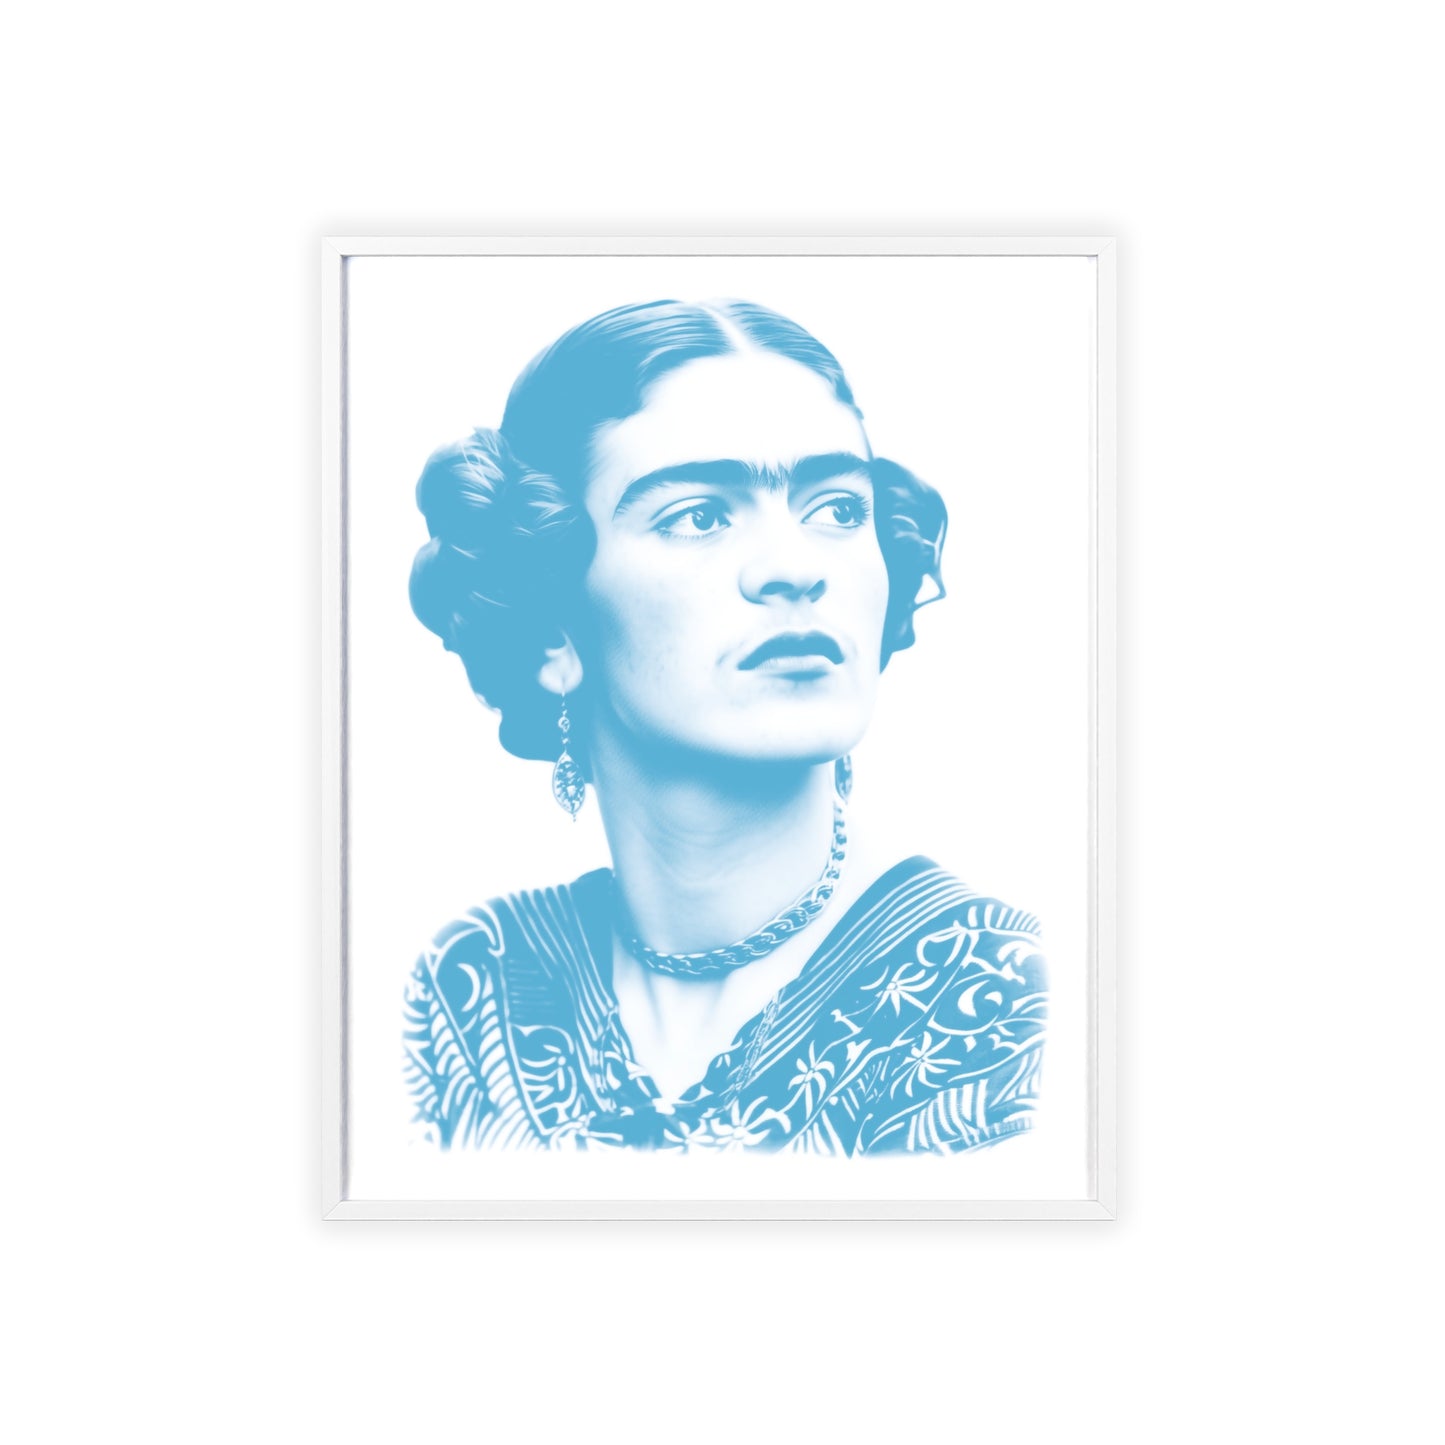 Frida in Cyan - Portrait